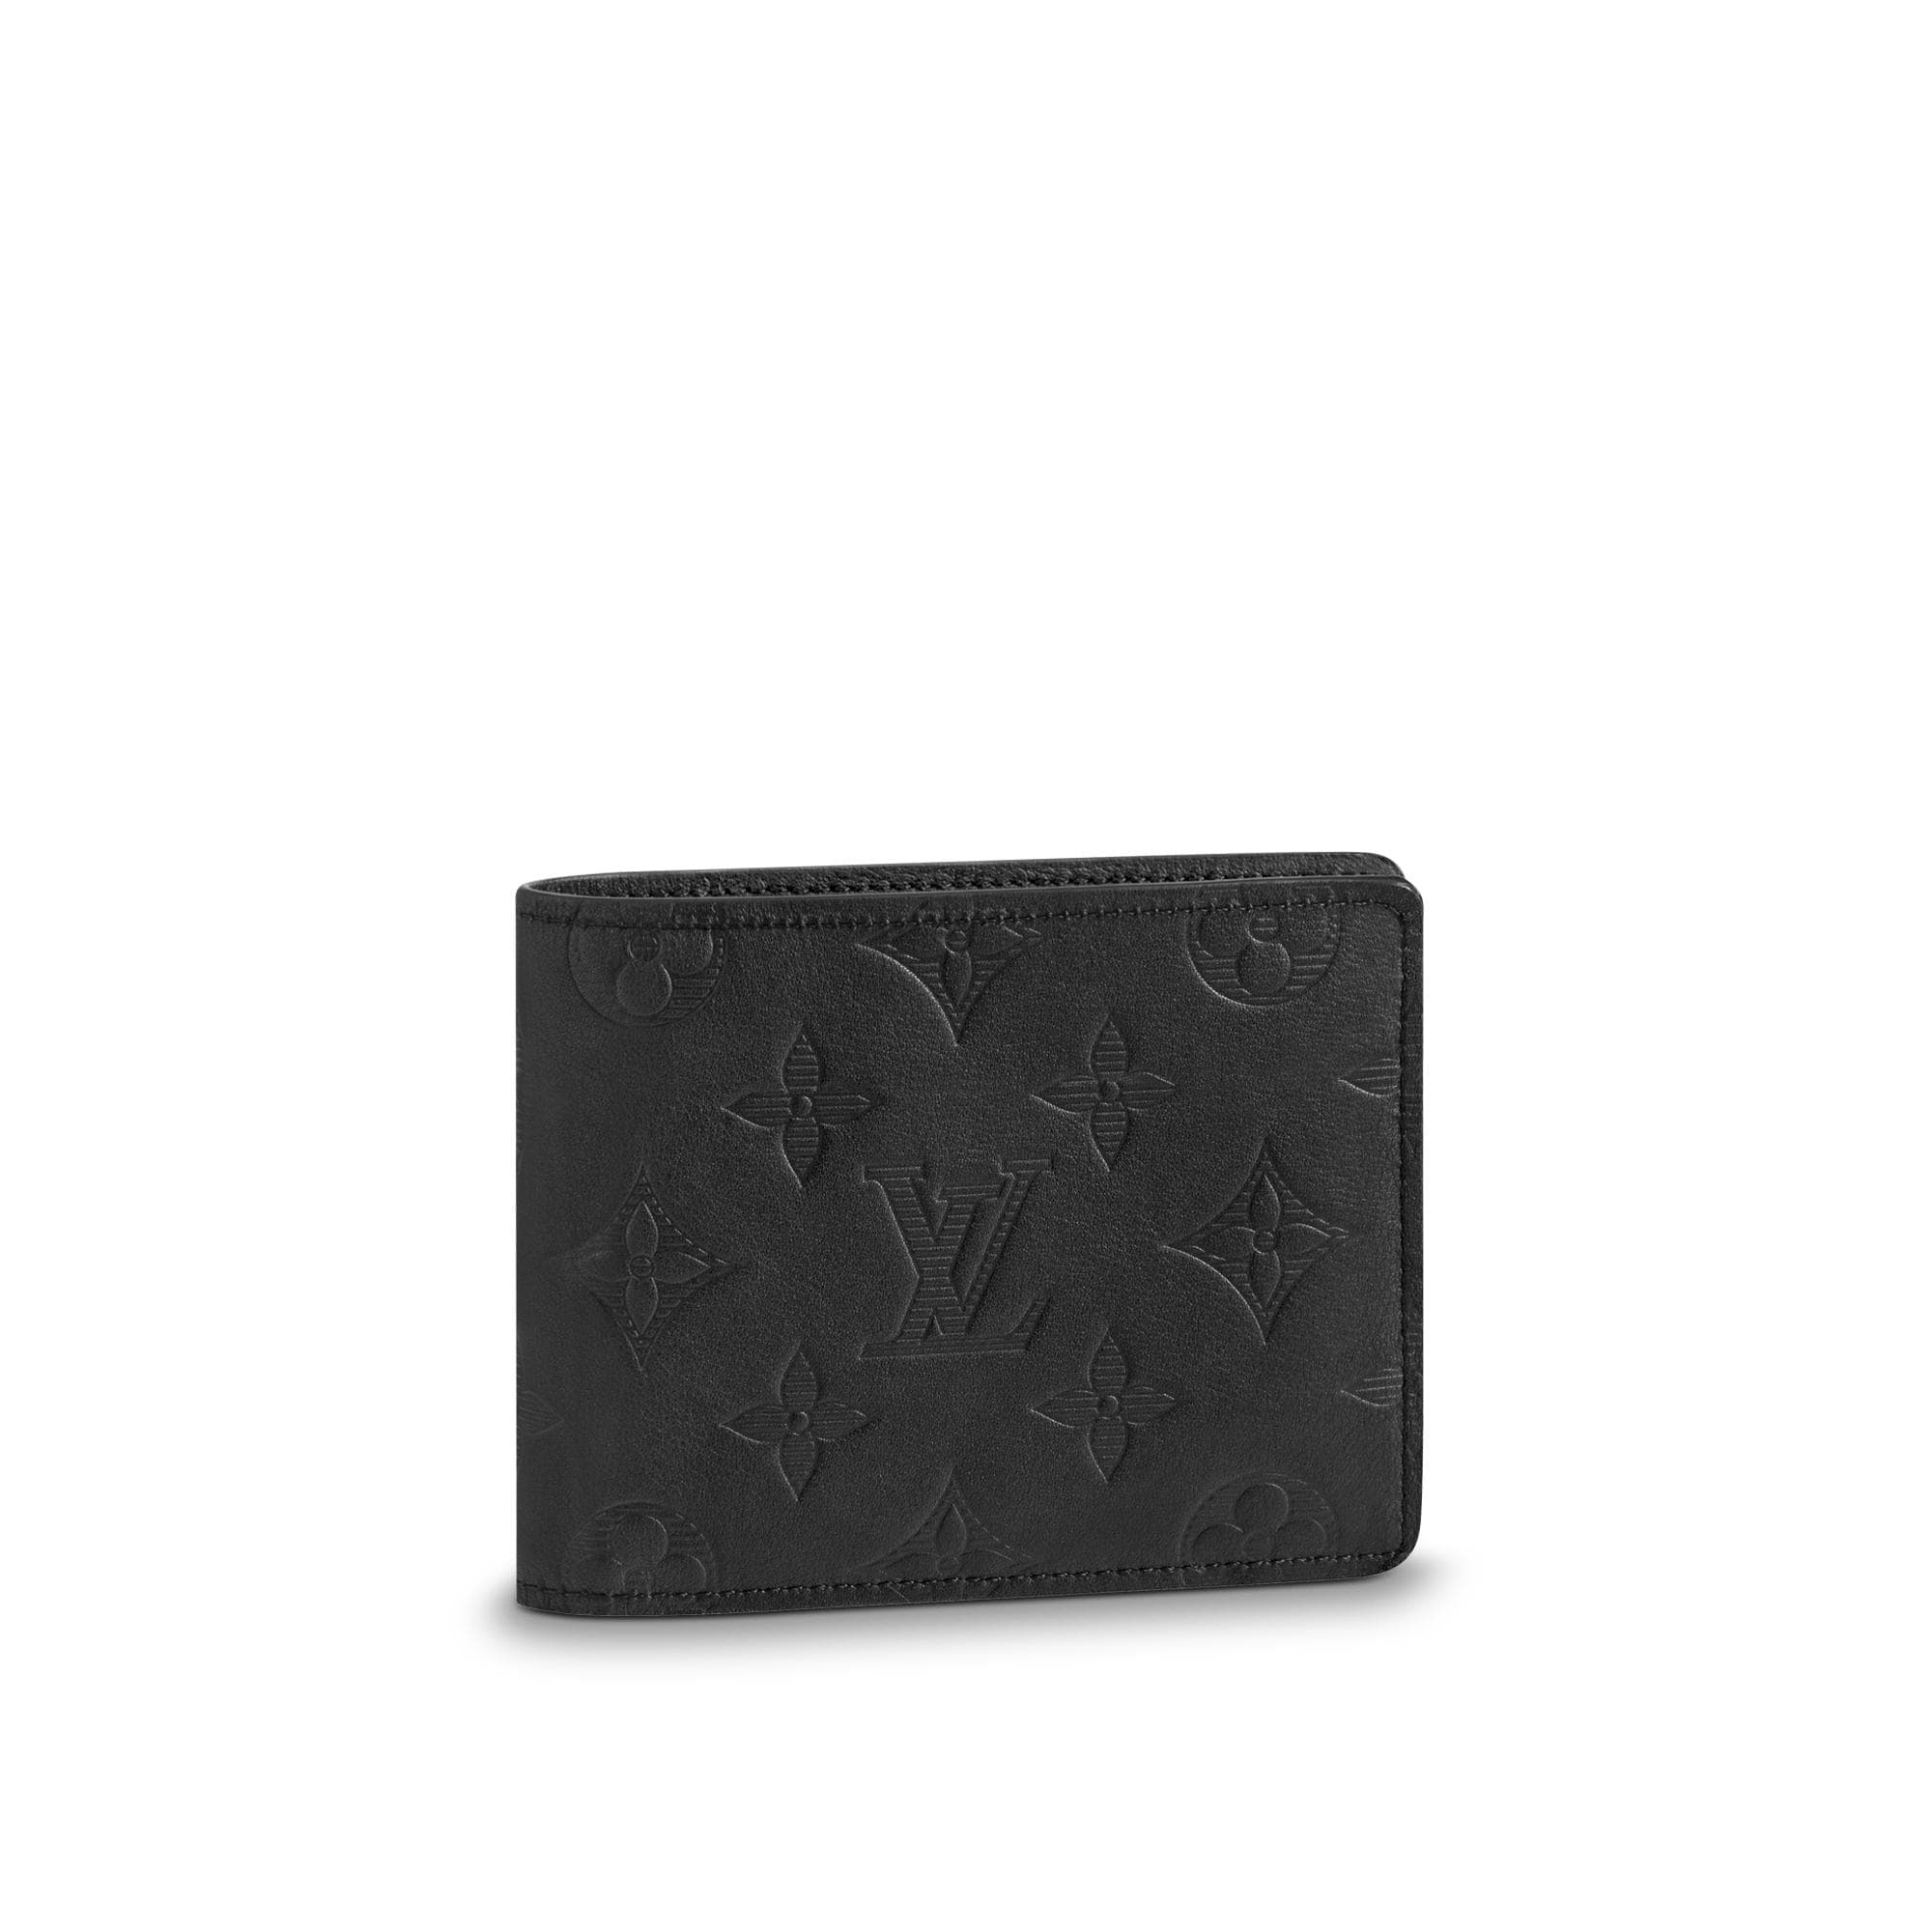 Mua Ví Nam Louis Vuitton LV Slender Wallet M62294 Màu Đen  Louis Vuitton   Mua tại Vua Hàng Hiệu h025921